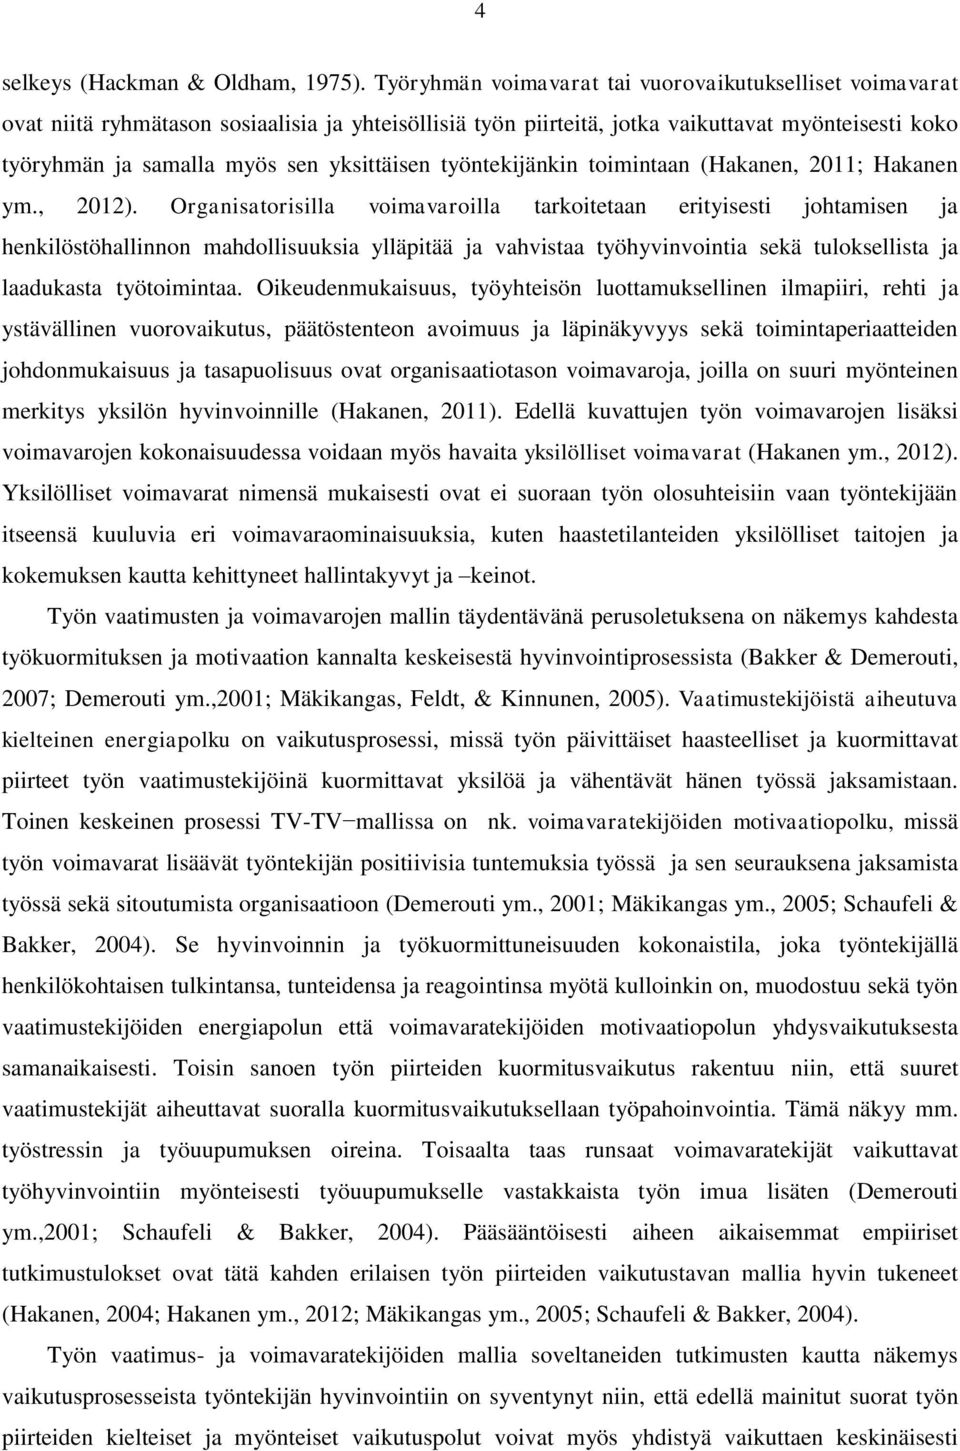 yksittäisen työntekijänkin toimintaan (Hakanen, 2011; Hakanen ym., 2012).